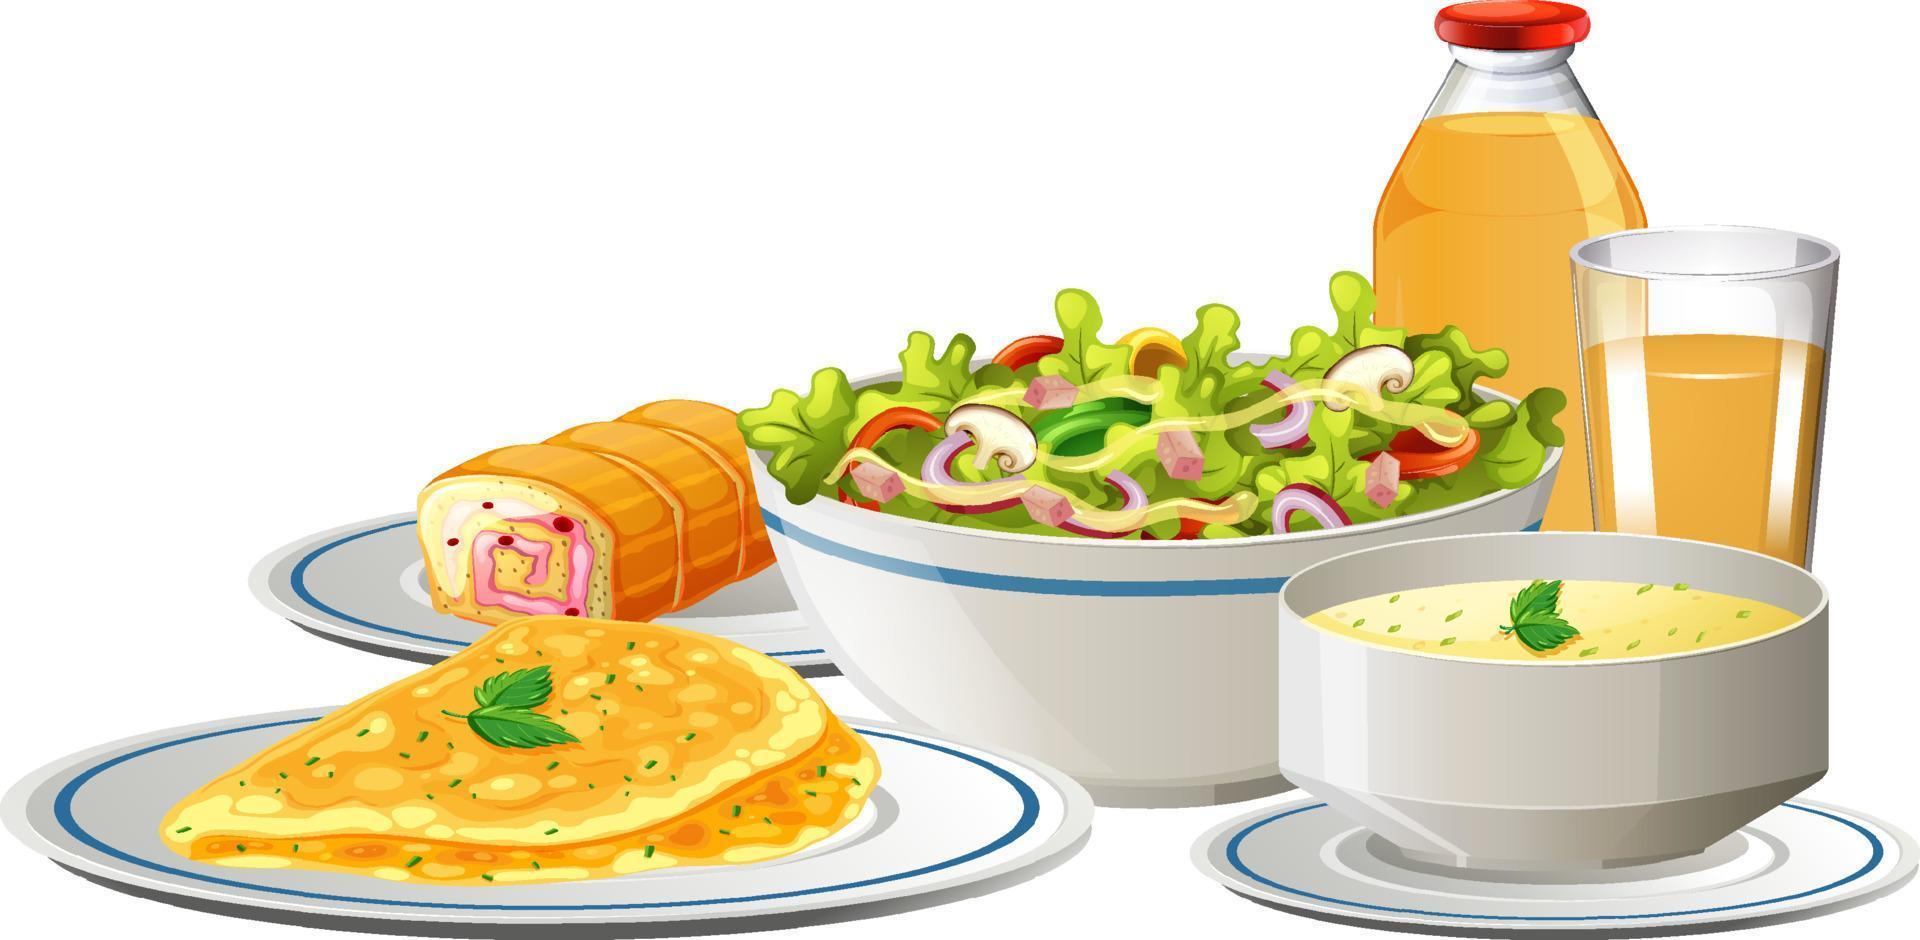 Frühstücksset mit Salatsuppe und Omelett vektor